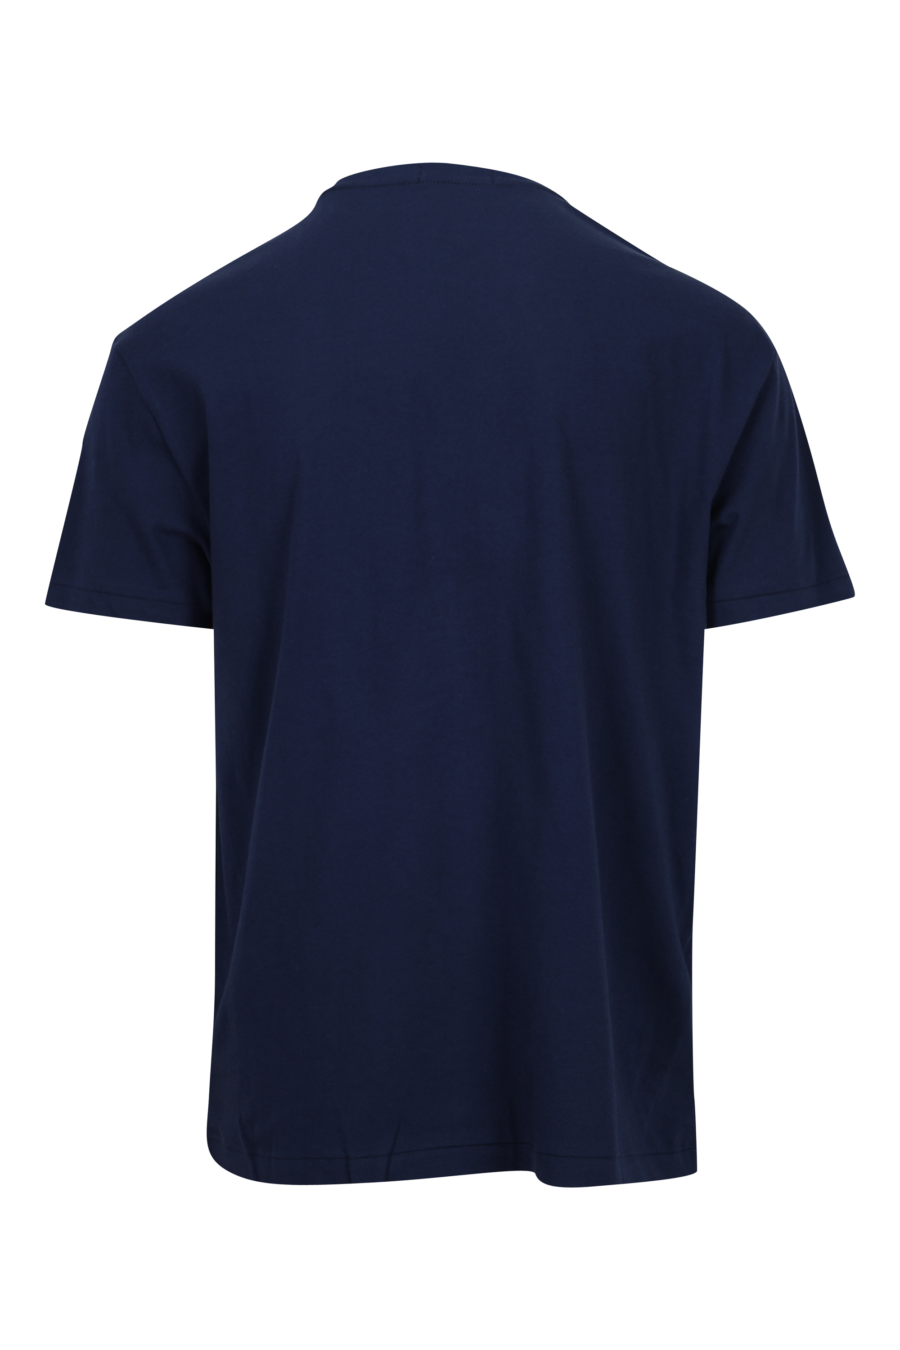 Camiseta azul oscura con maxilogo "polo bear" traje - 3616536168786 1